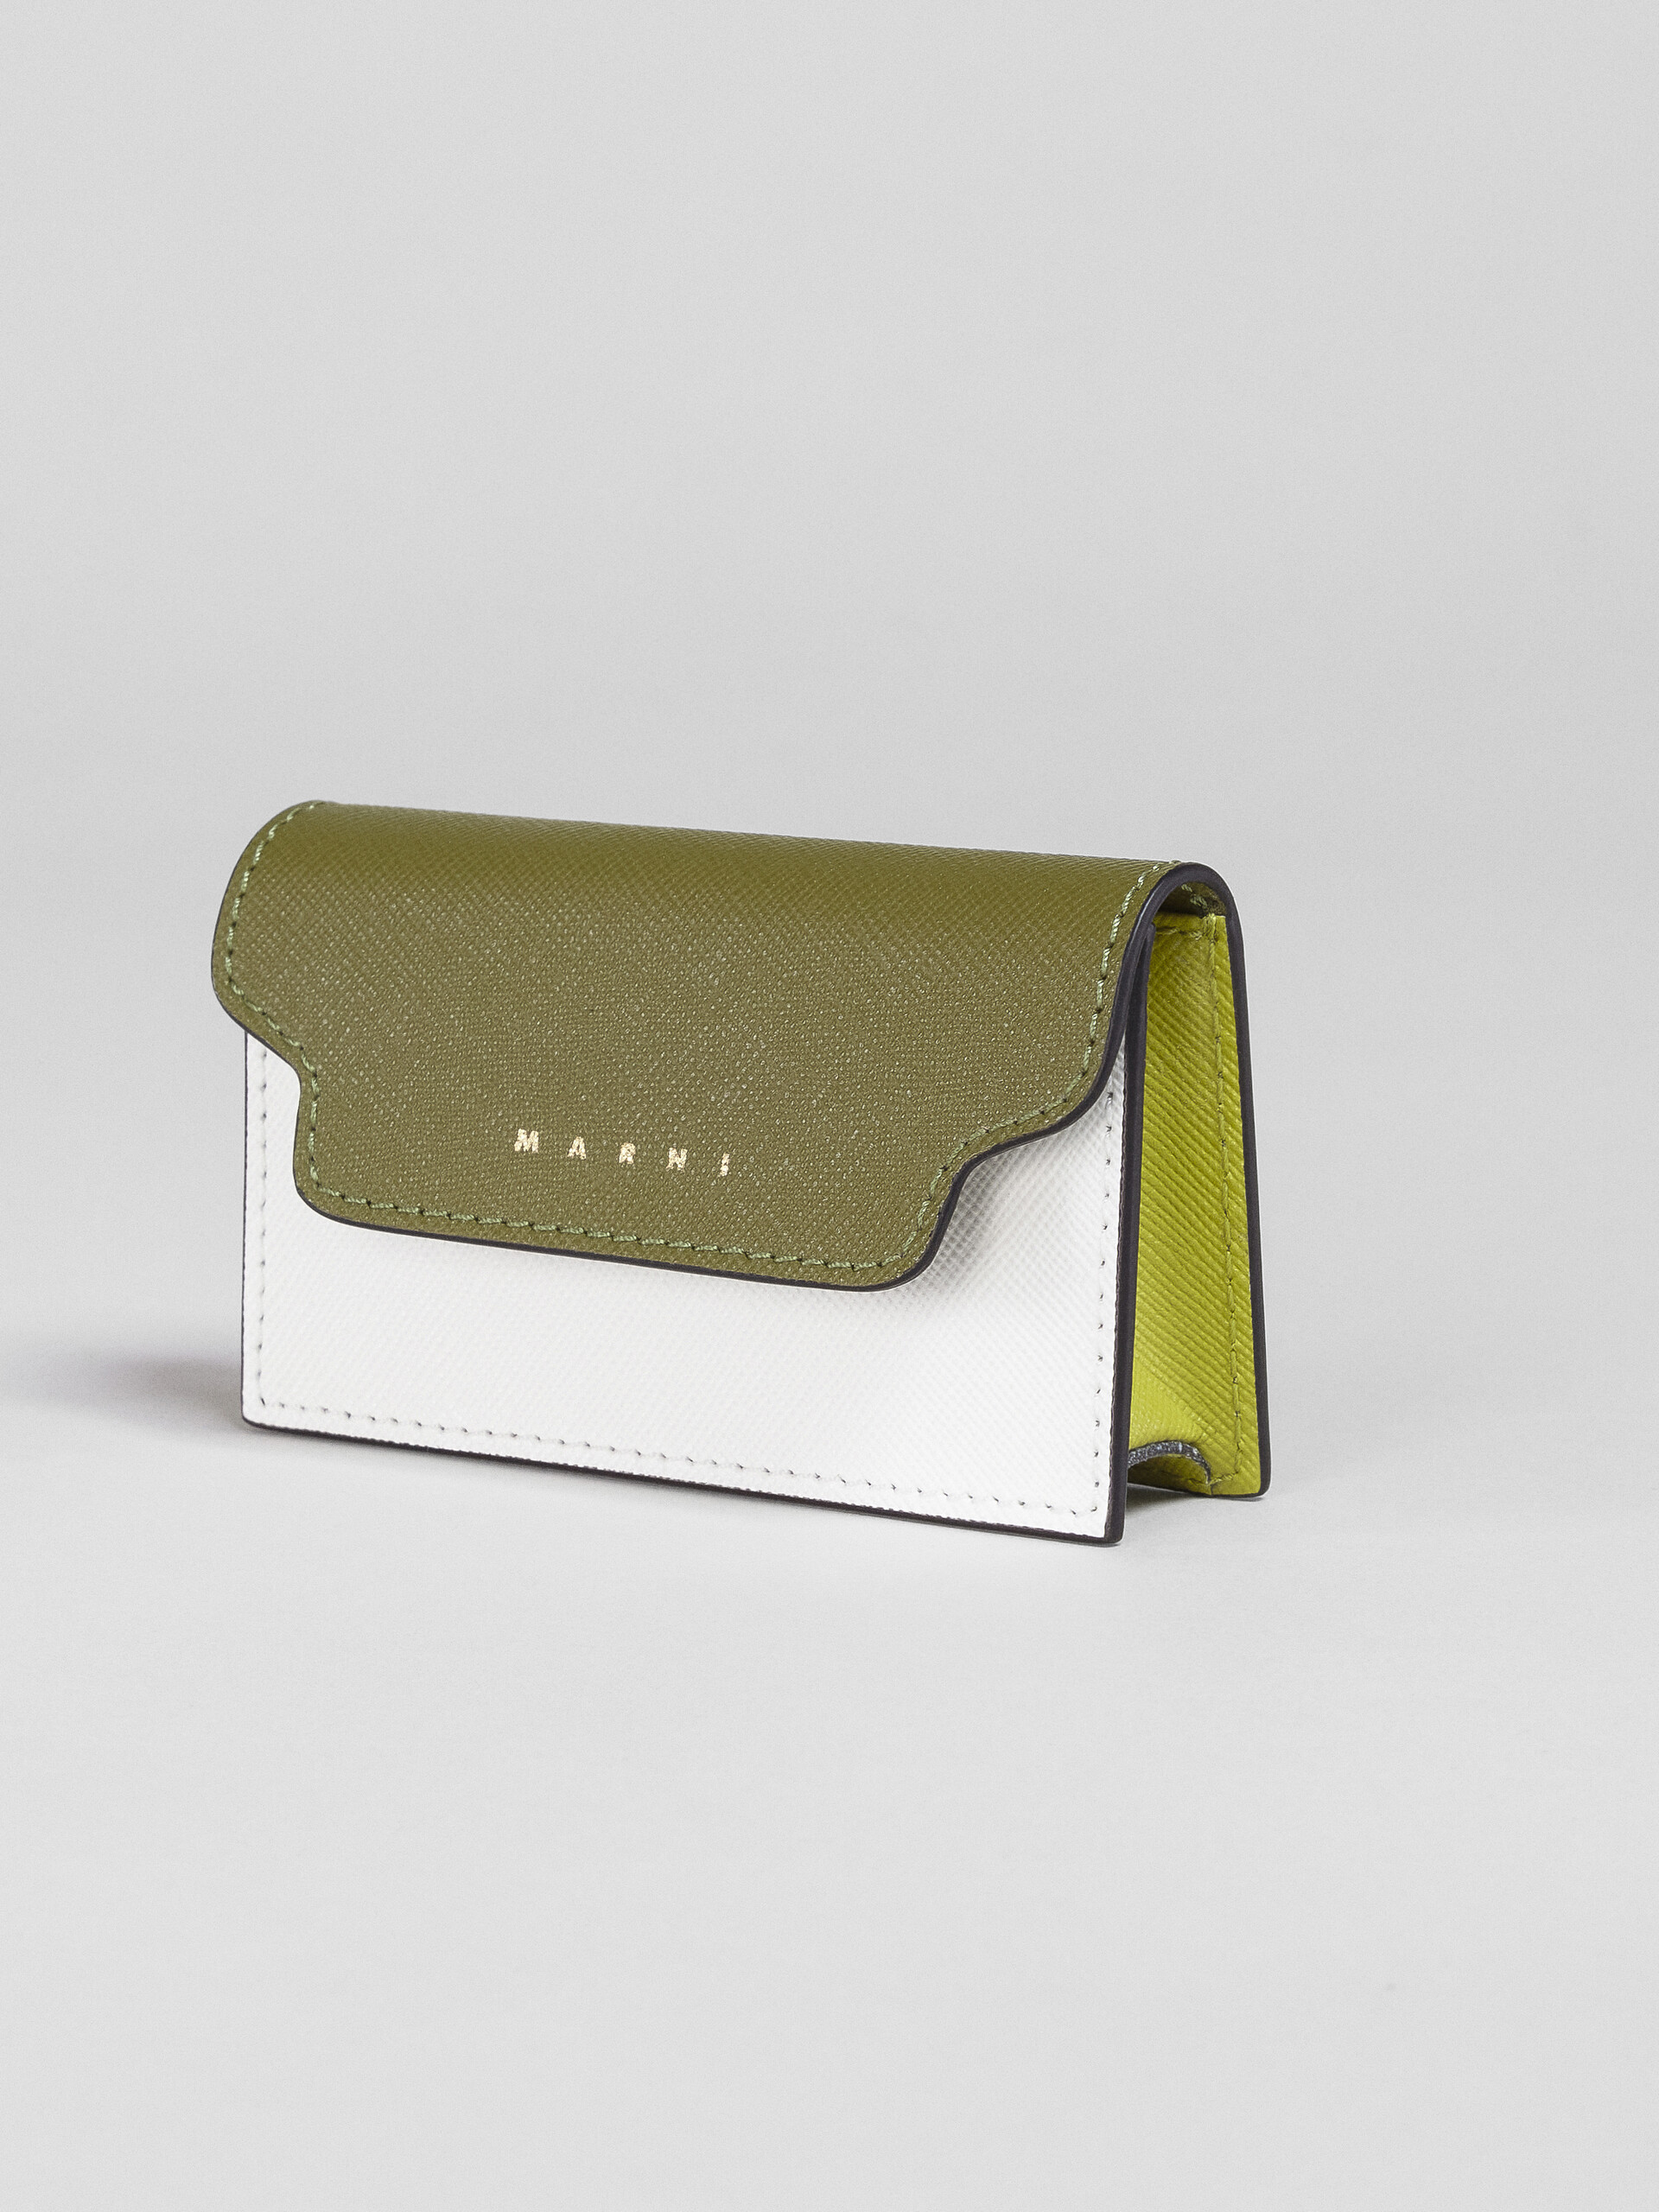 Porte-cartes de visite en saffiano vert et blanc ton sur ton - Portefeuilles - Image 4